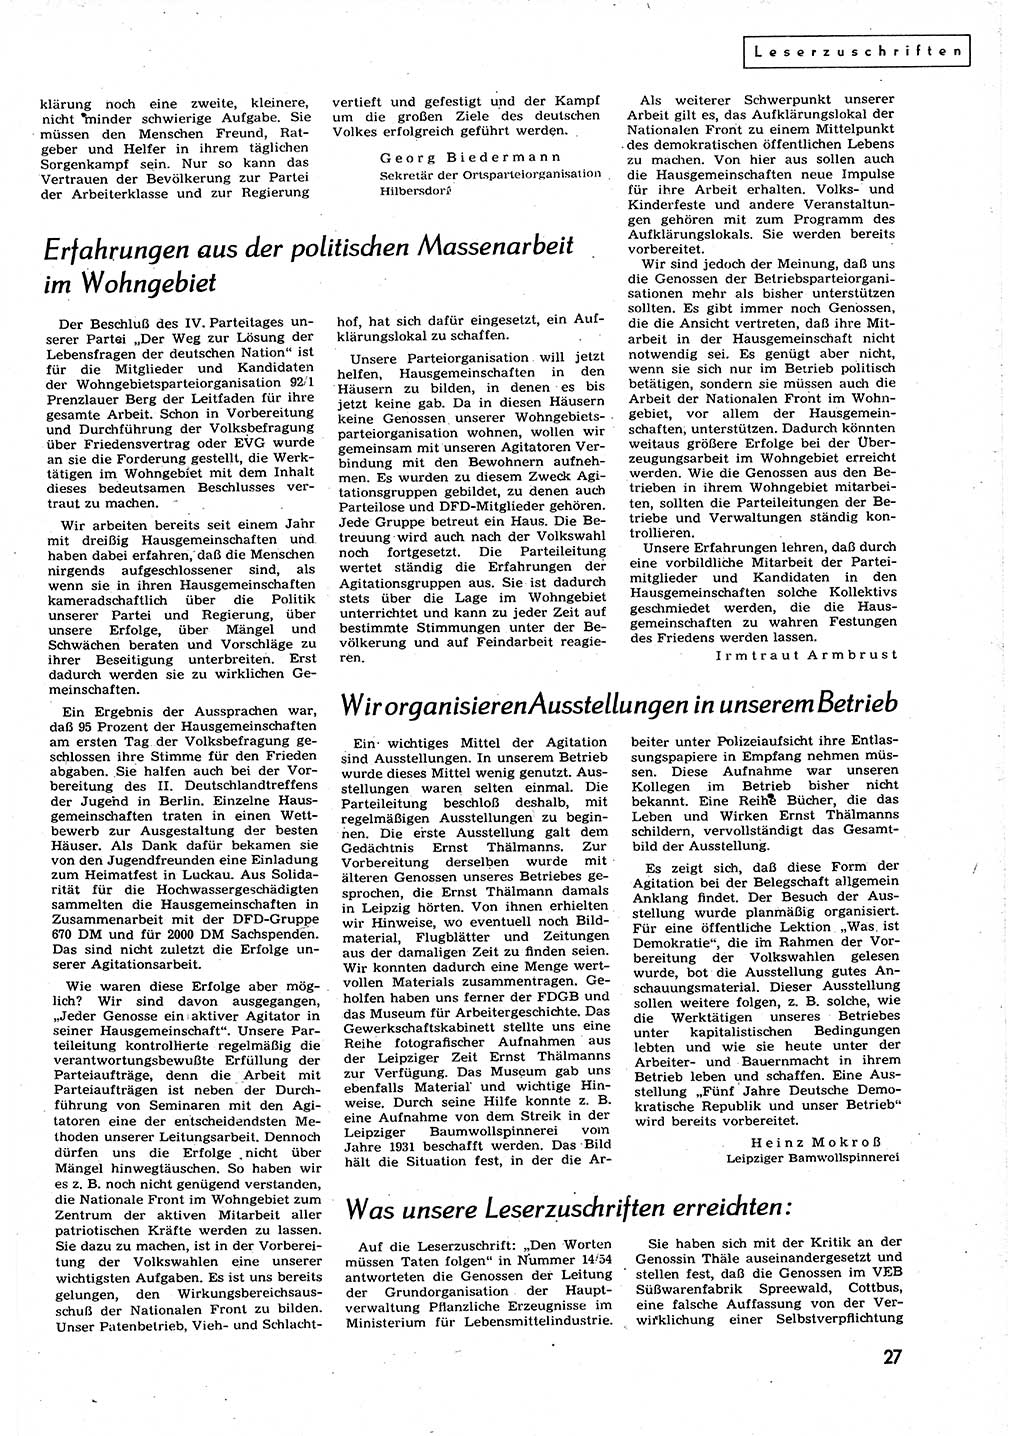 Neuer Weg (NW), Organ des Zentralkomitees (ZK) der SED (Sozialistische Einheitspartei Deutschlands) für alle Parteiarbeiter, 9. Jahrgang [Deutsche Demokratische Republik (DDR)] 1954, Heft 18/27 (NW ZK SED DDR 1954, H. 18/27)